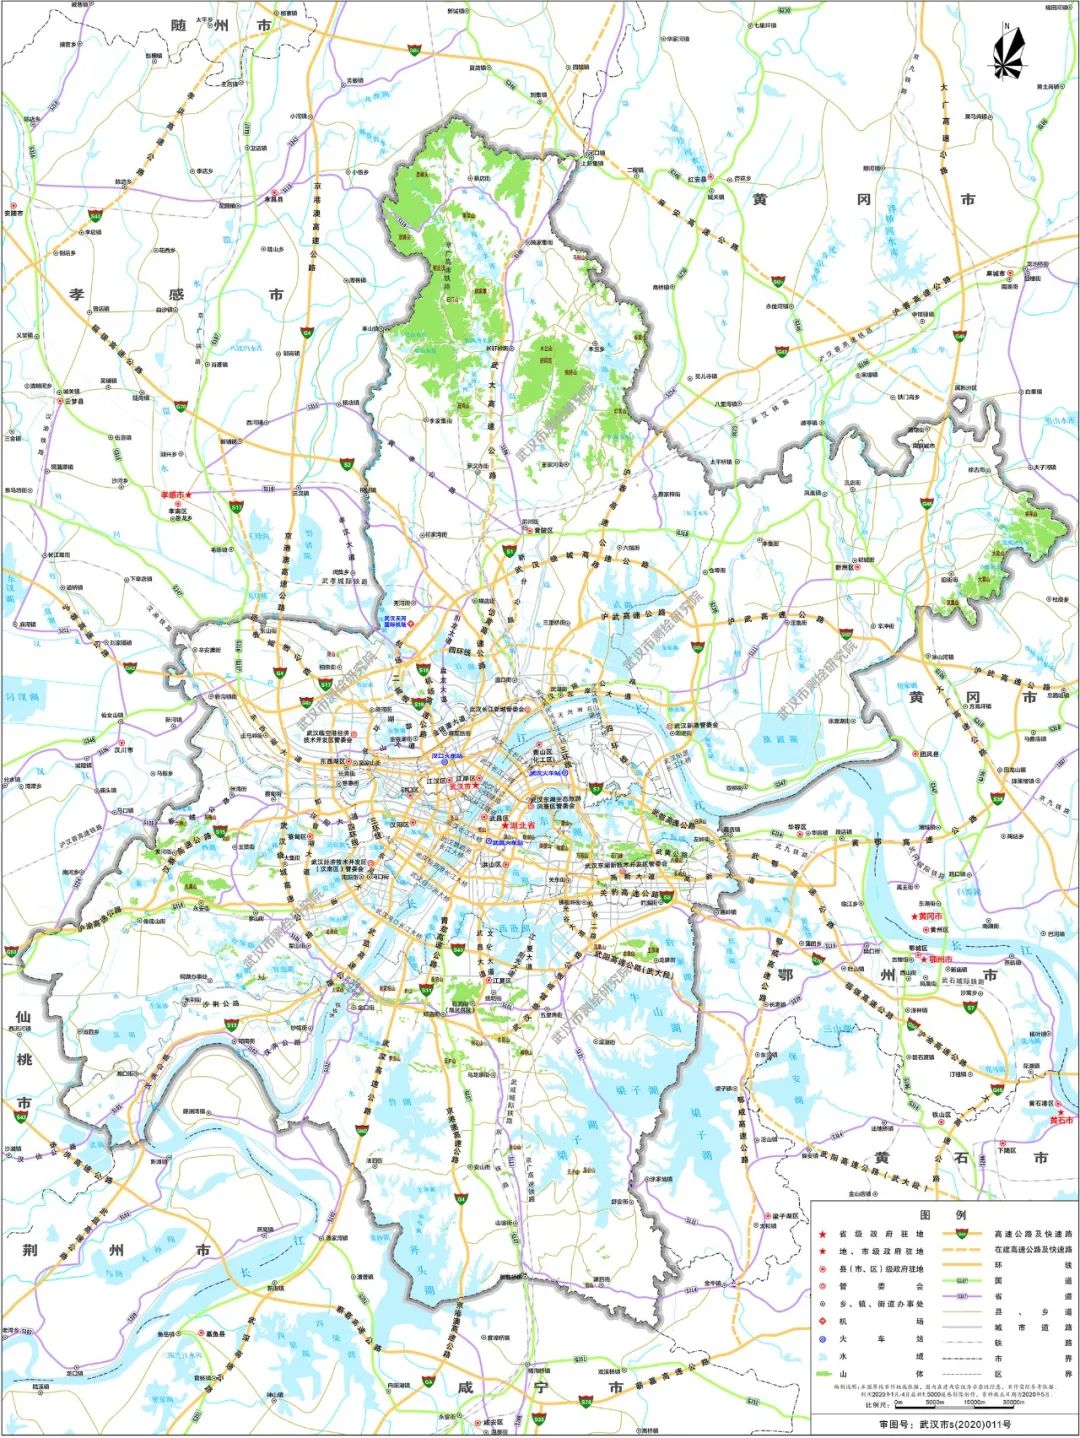 经审查通过,现更新发布2019版武汉市地图附后(以上电子数据可从武汉